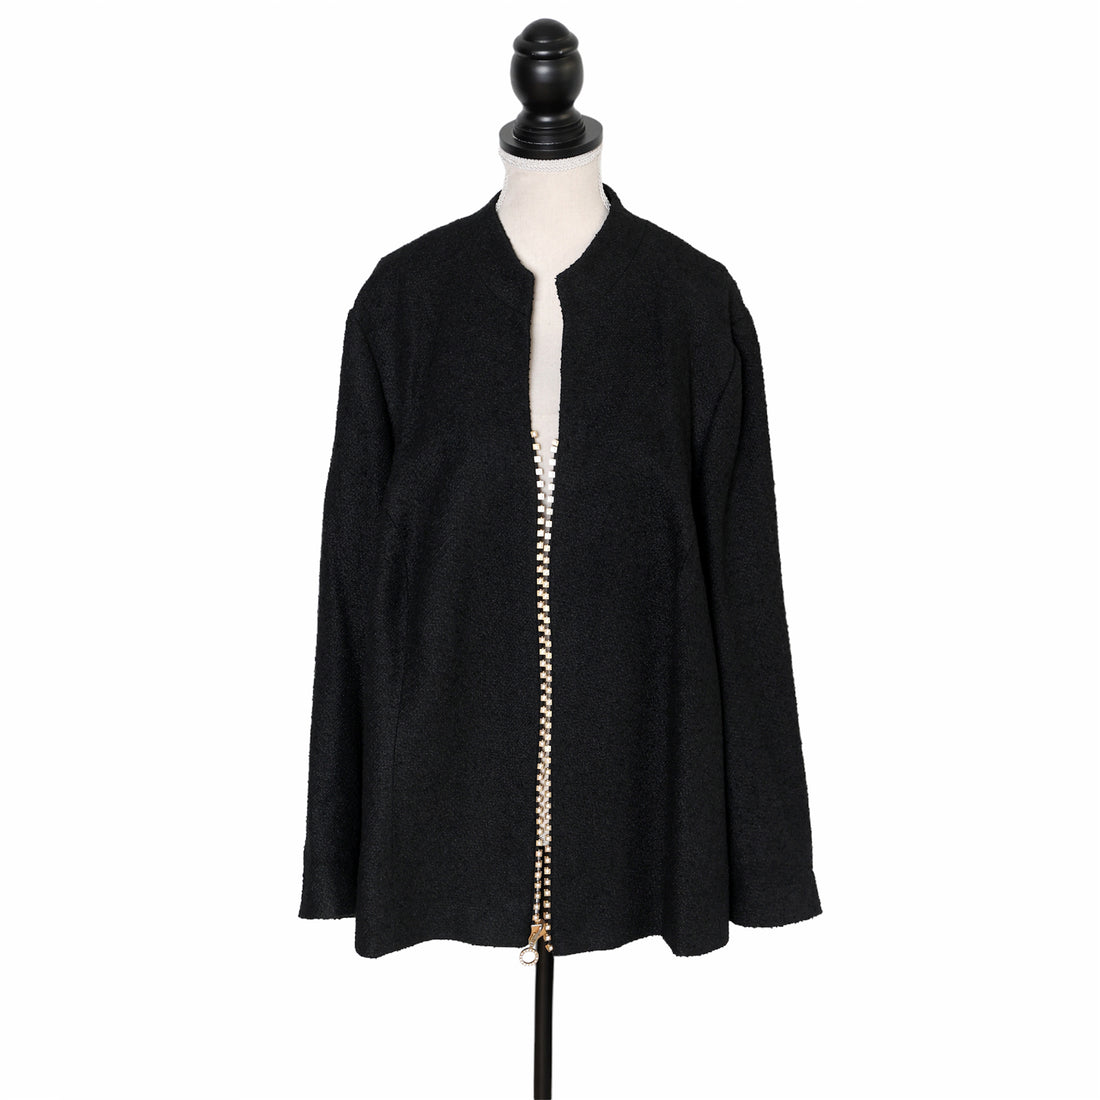 Gabriele Hennig Haute Couture Jacke mit aufwändiger Verzierung in Reißverschluss-Optik